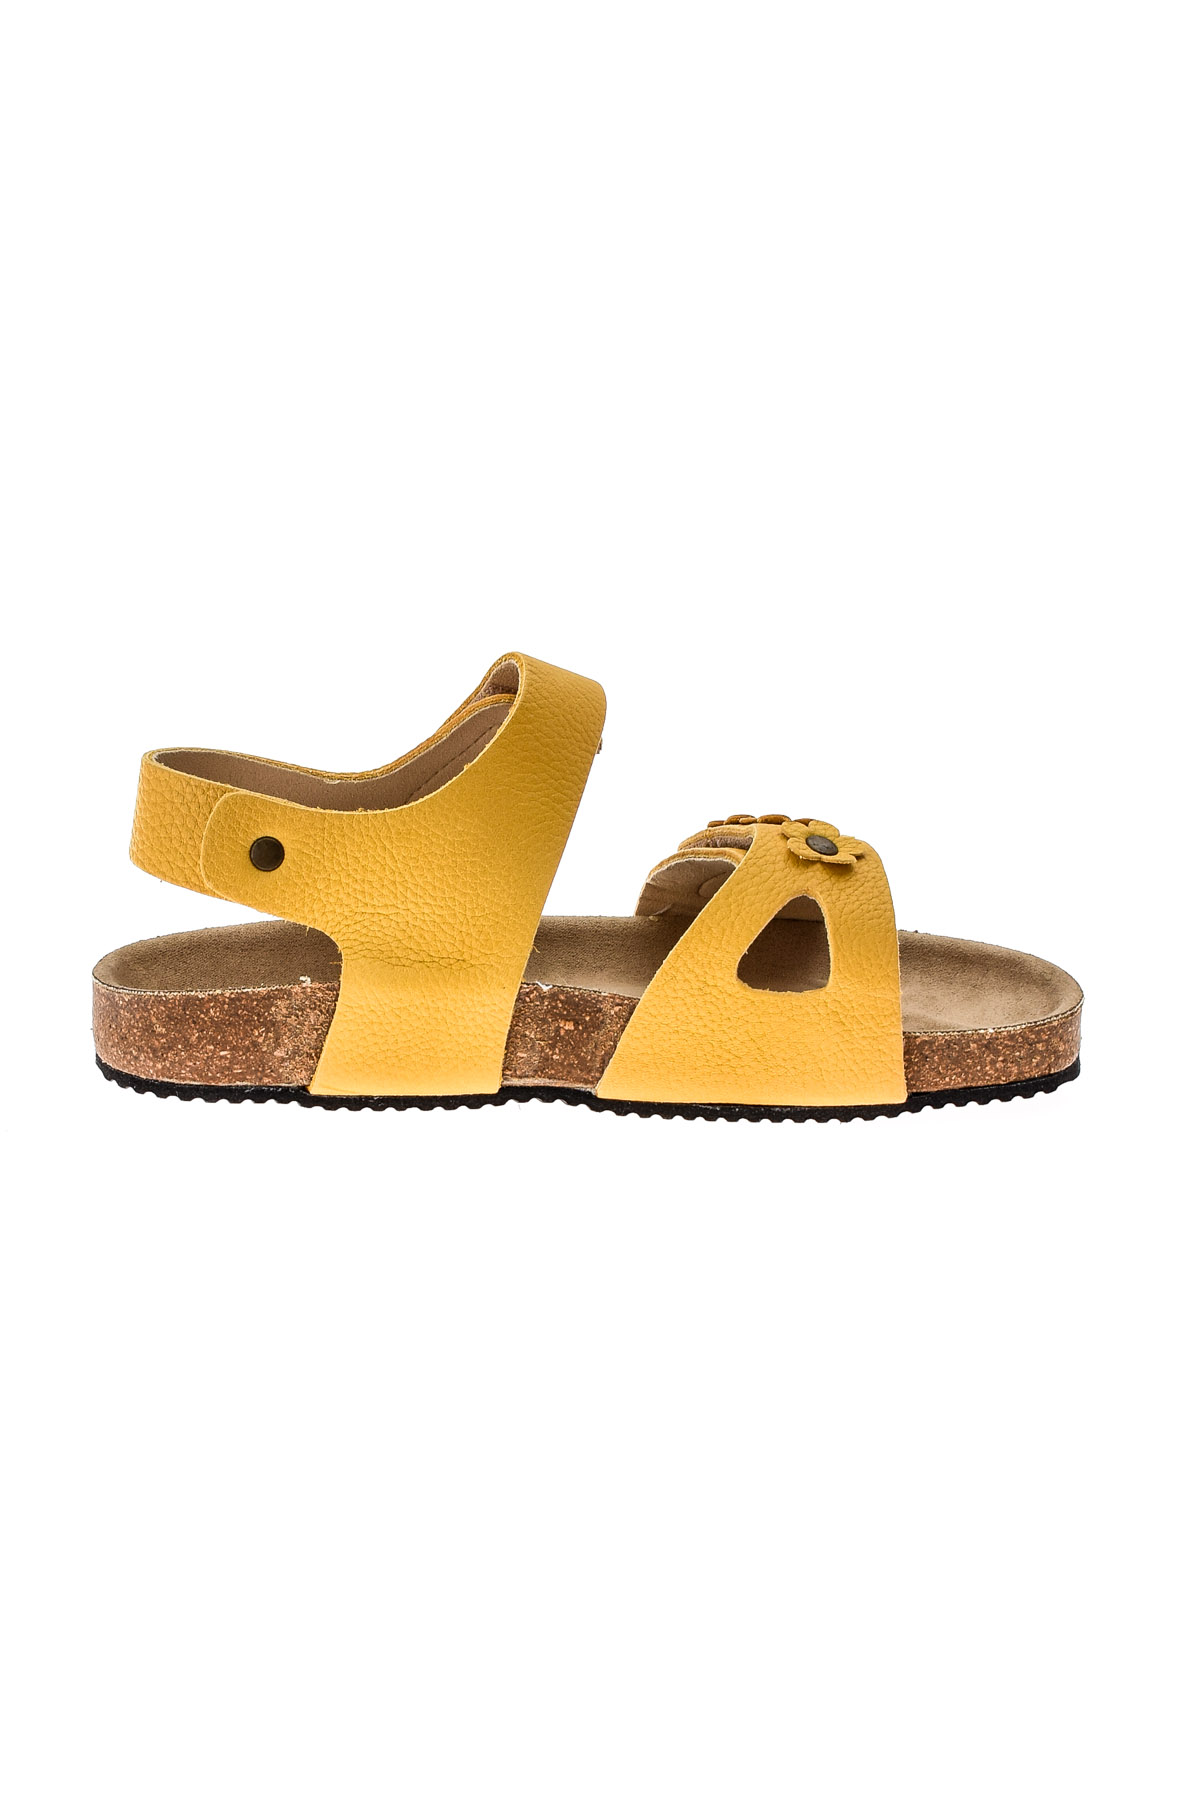 Sandals for girls - KAVAT - 1